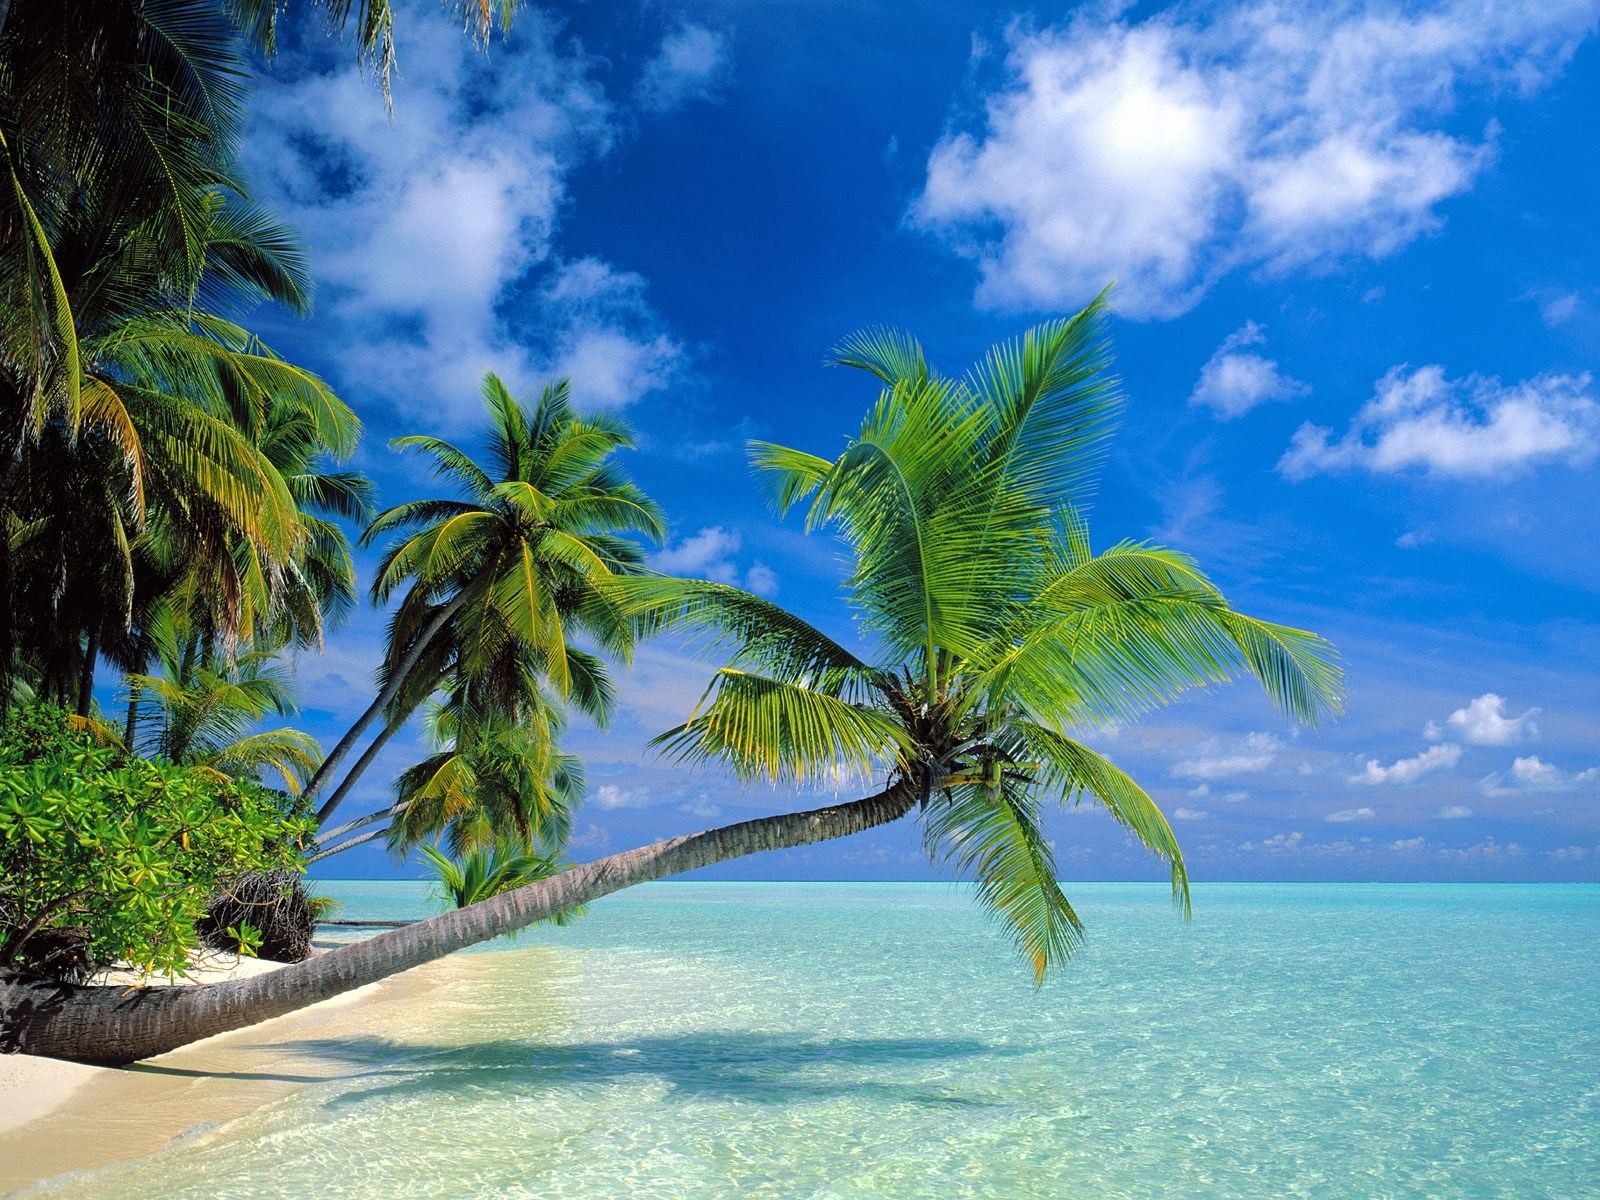 Tropical Palm Leaves Mô Hình Liền Mạch Nền Hoa Rừng Mùa Hè Thiết Kế Tán Lá  Thực Vật Kỳ Lạ Với Cây Nhiệt Đới Cho Vải Dệt Thời Trang Hình Nền Minh